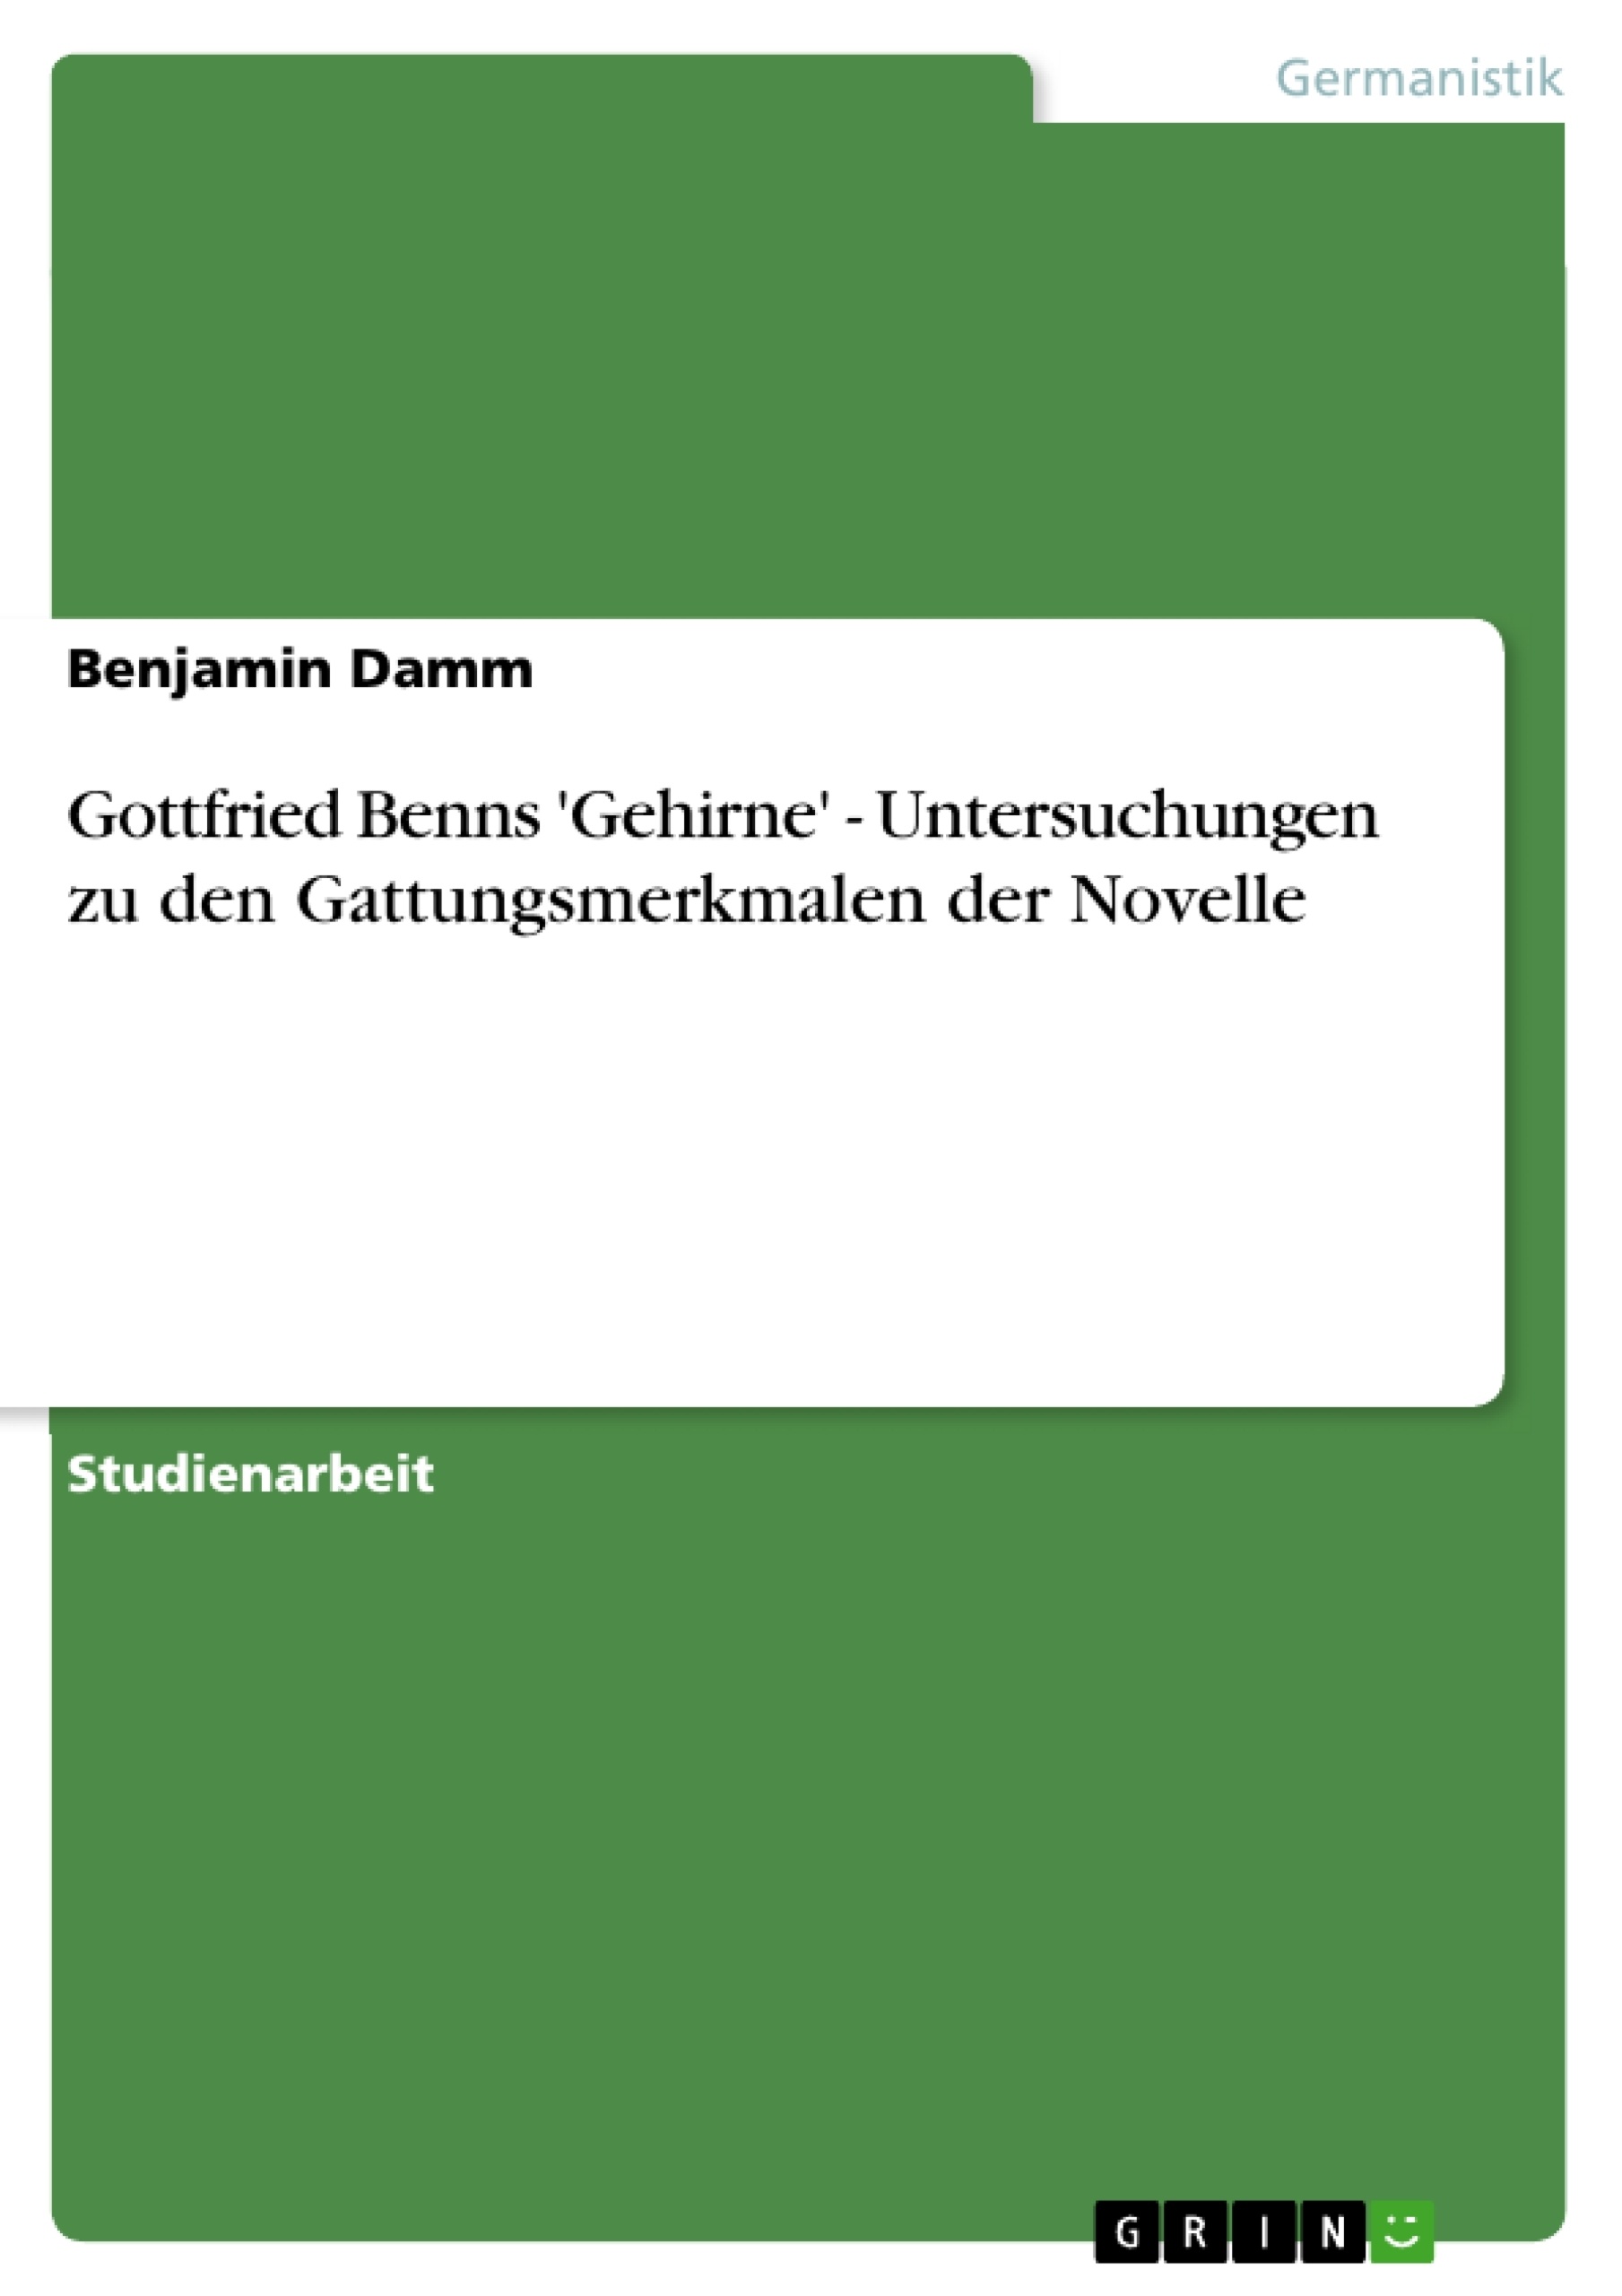 Title: Gottfried Benns 'Gehirne' - Untersuchungen zu den Gattungsmerkmalen der Novelle